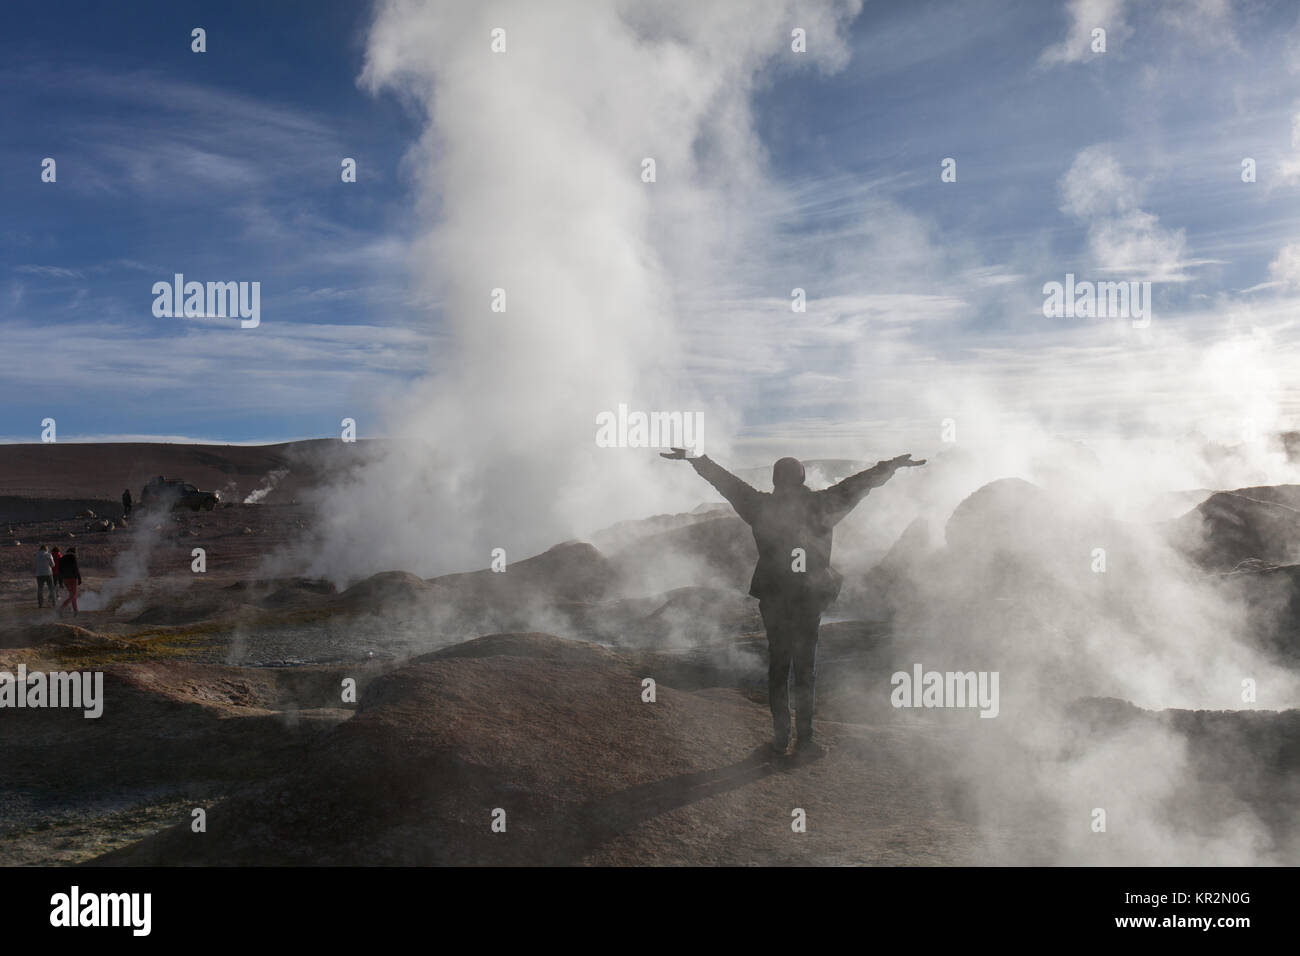 Personne parmi les geysers dans le cratère d'un volcan en Bolivie Uyuni Banque D'Images